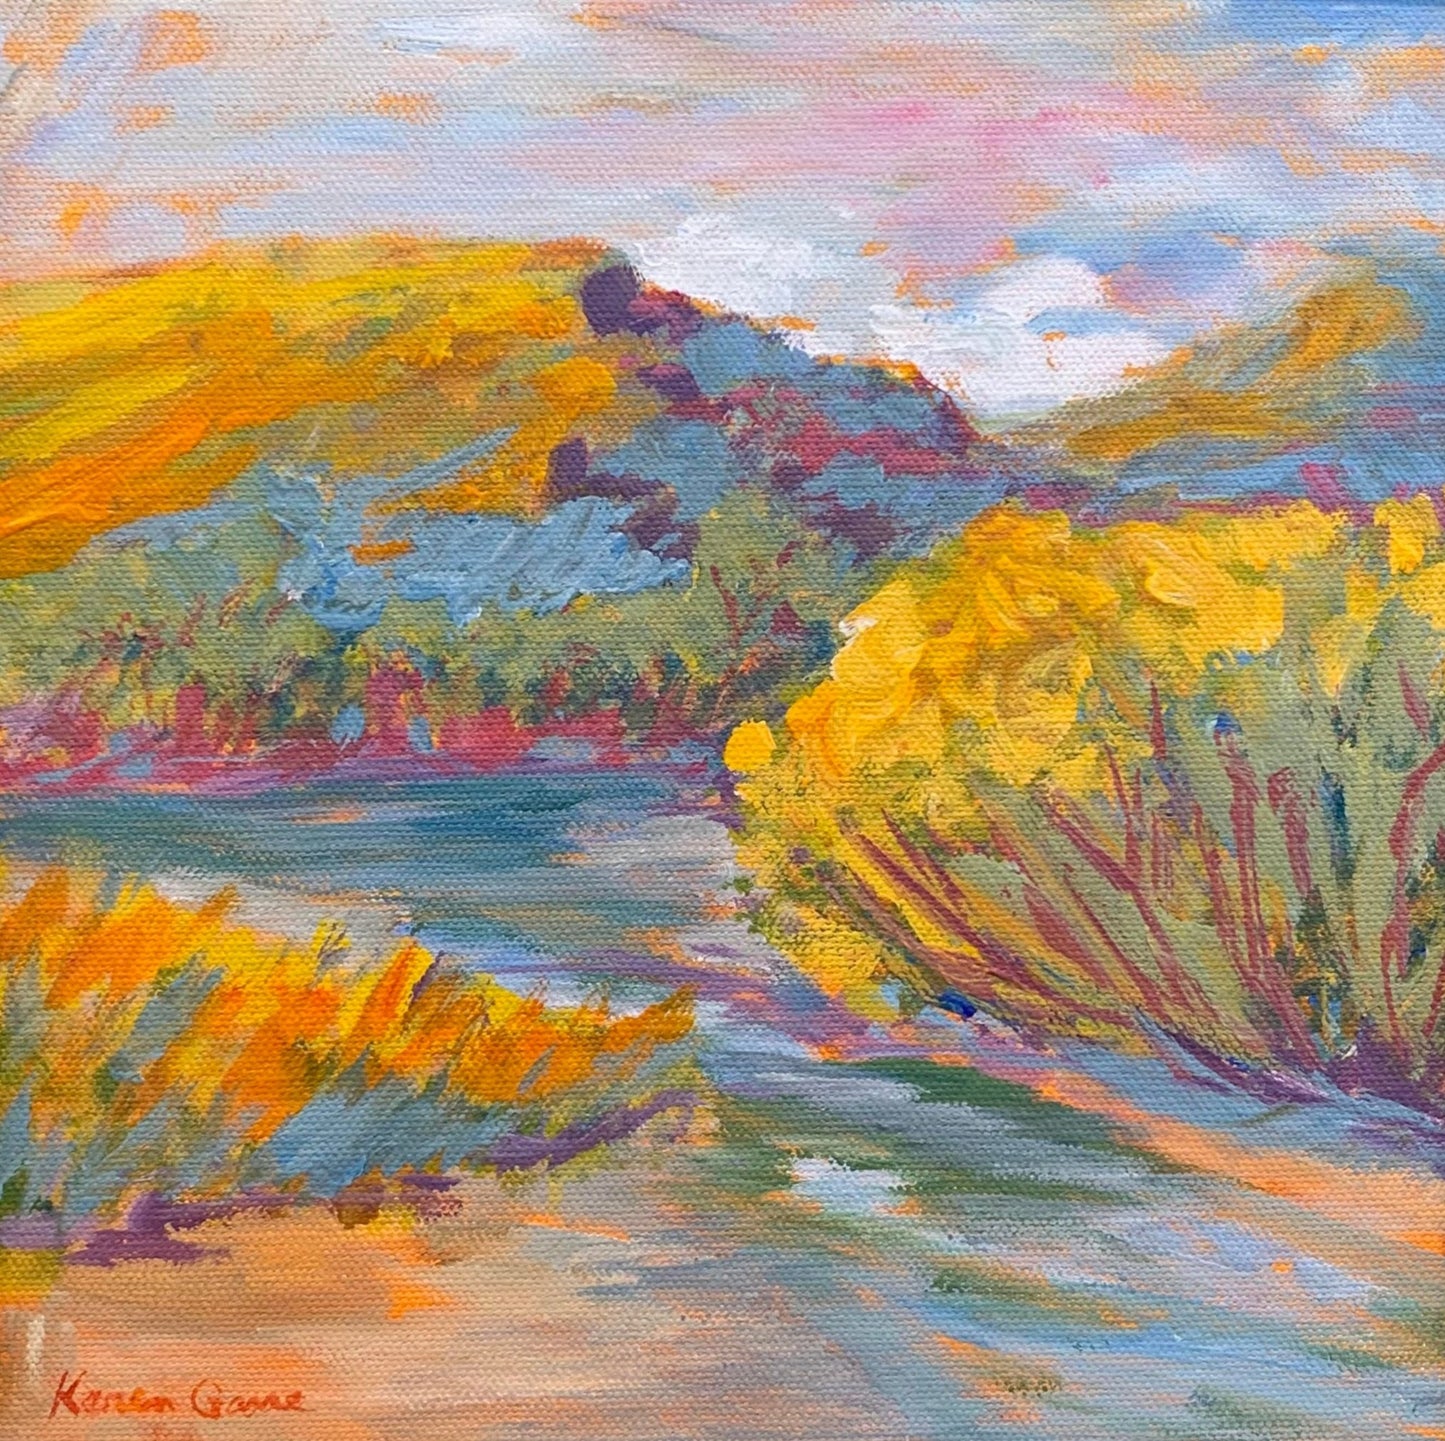 KarenG- Painting- "River View" 10x10